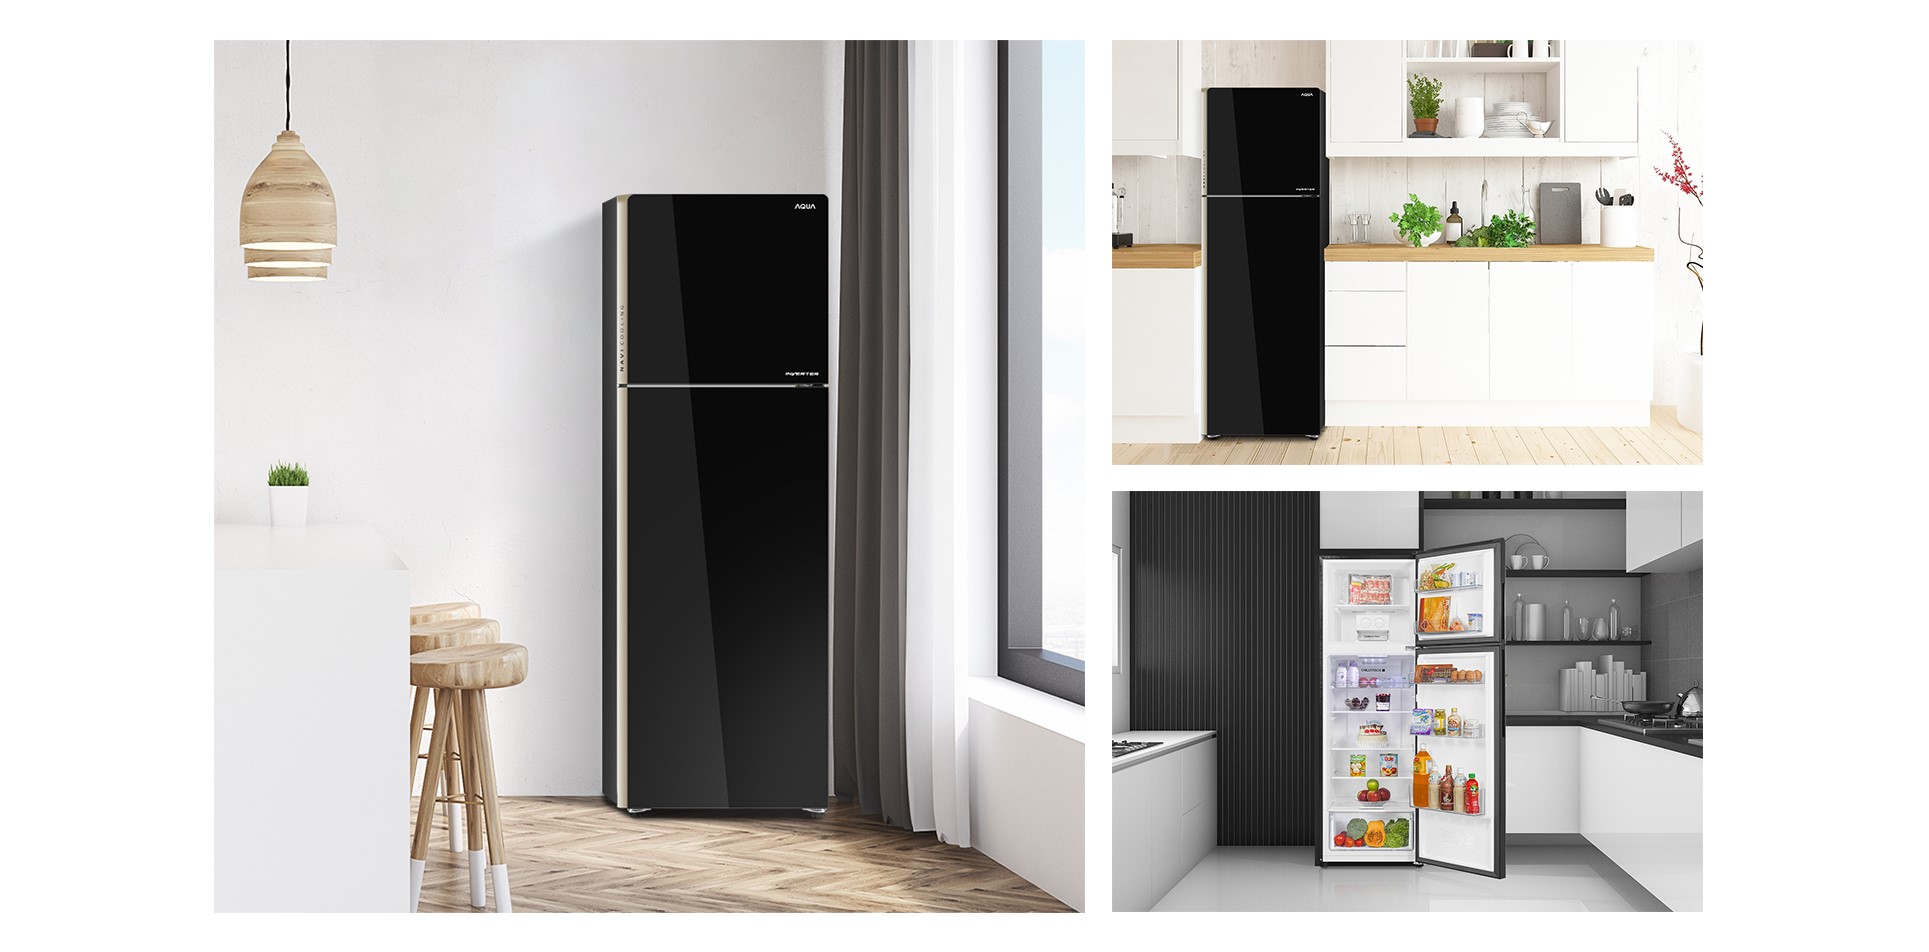 Tủ lạnh AQUA AQR-IG288EN với thiết kế tinh tế giúp không gian căn bếp của bạn thêm nổi bật và hiện đại hơn. 